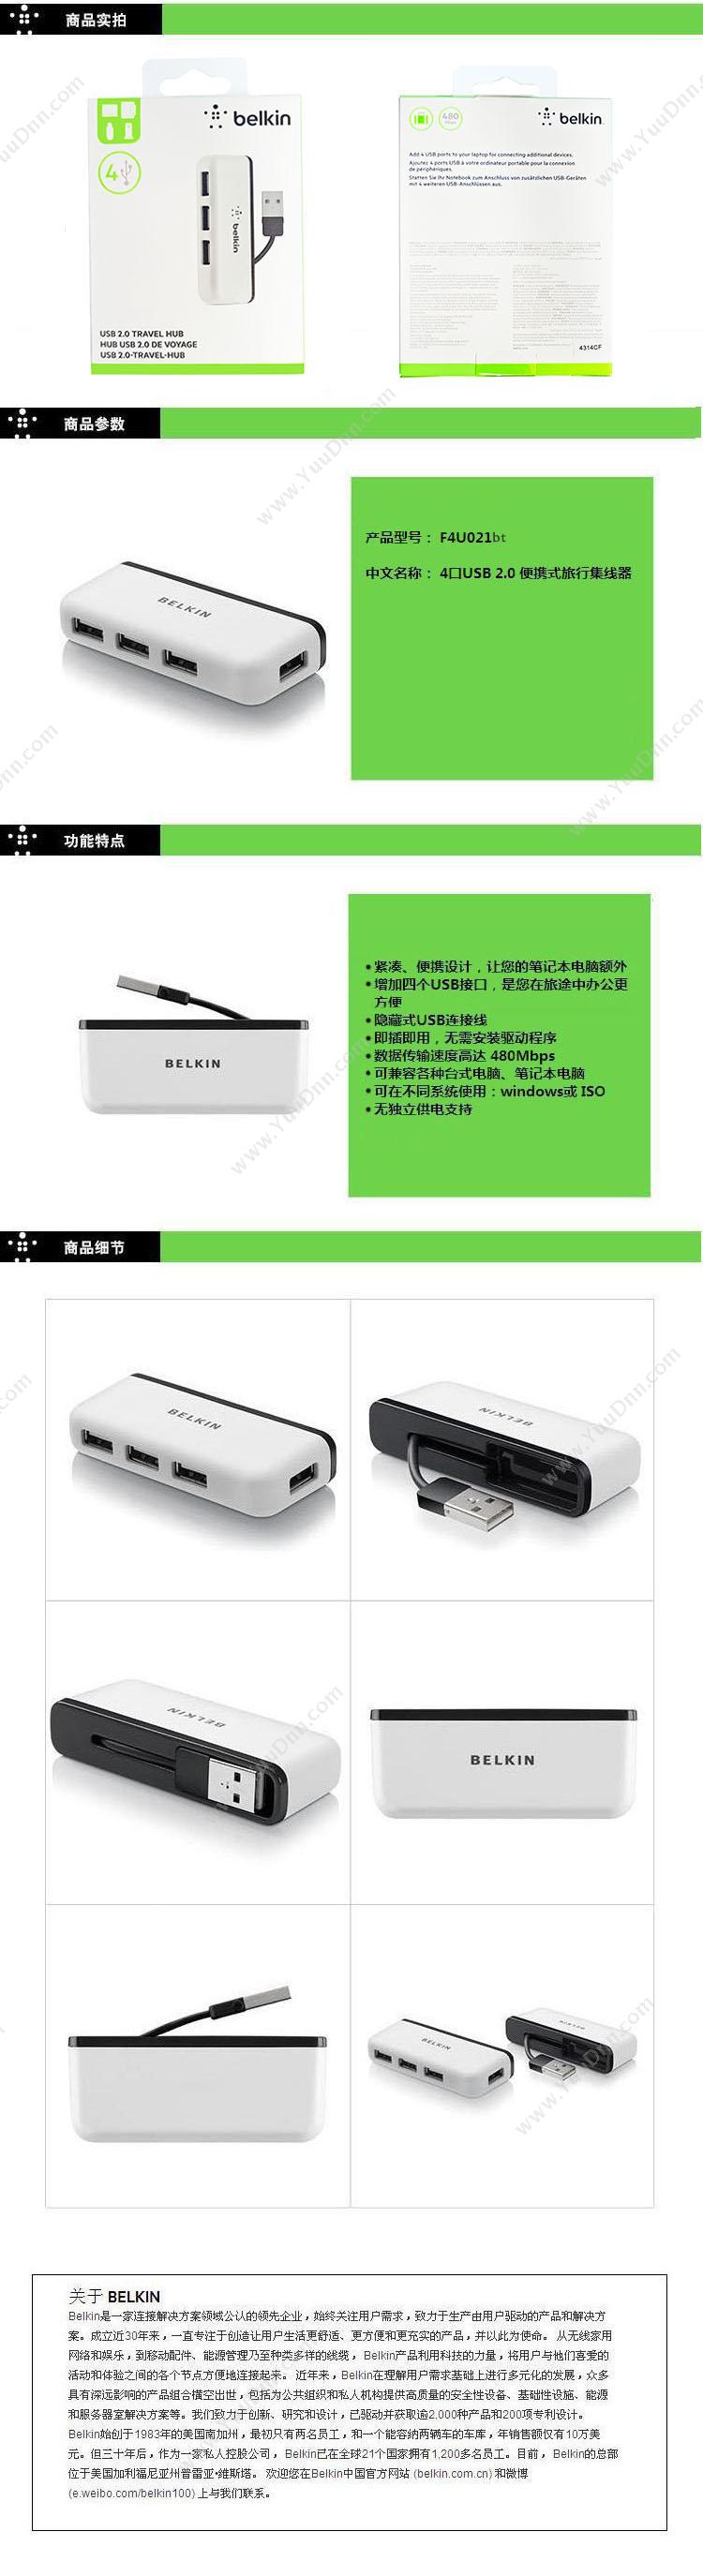 贝尔金 Belkin F4U021bt USB四口   白色 4个 USB 端口 具备过载保护功能，保护您的电脑和设备不受损坏， 即插即用；不需要任何驱动程序 数据传输速度达 480Mbps 与 PC 和 Mac® 兼容 集线器